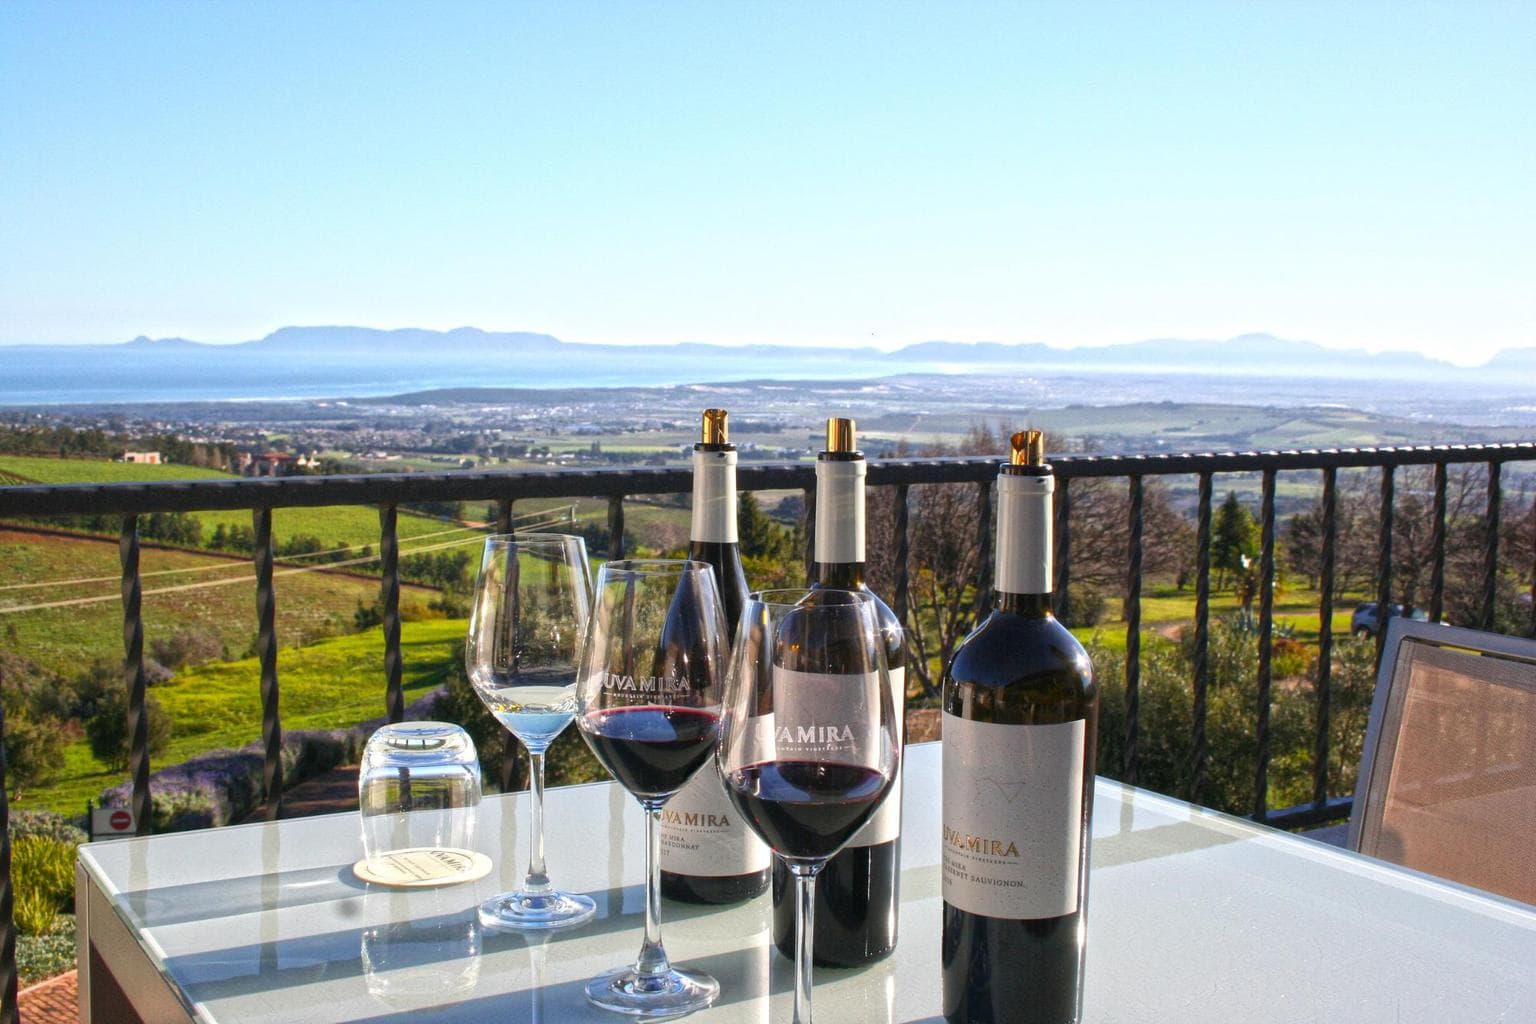 Wine tasting views at Uva Mira